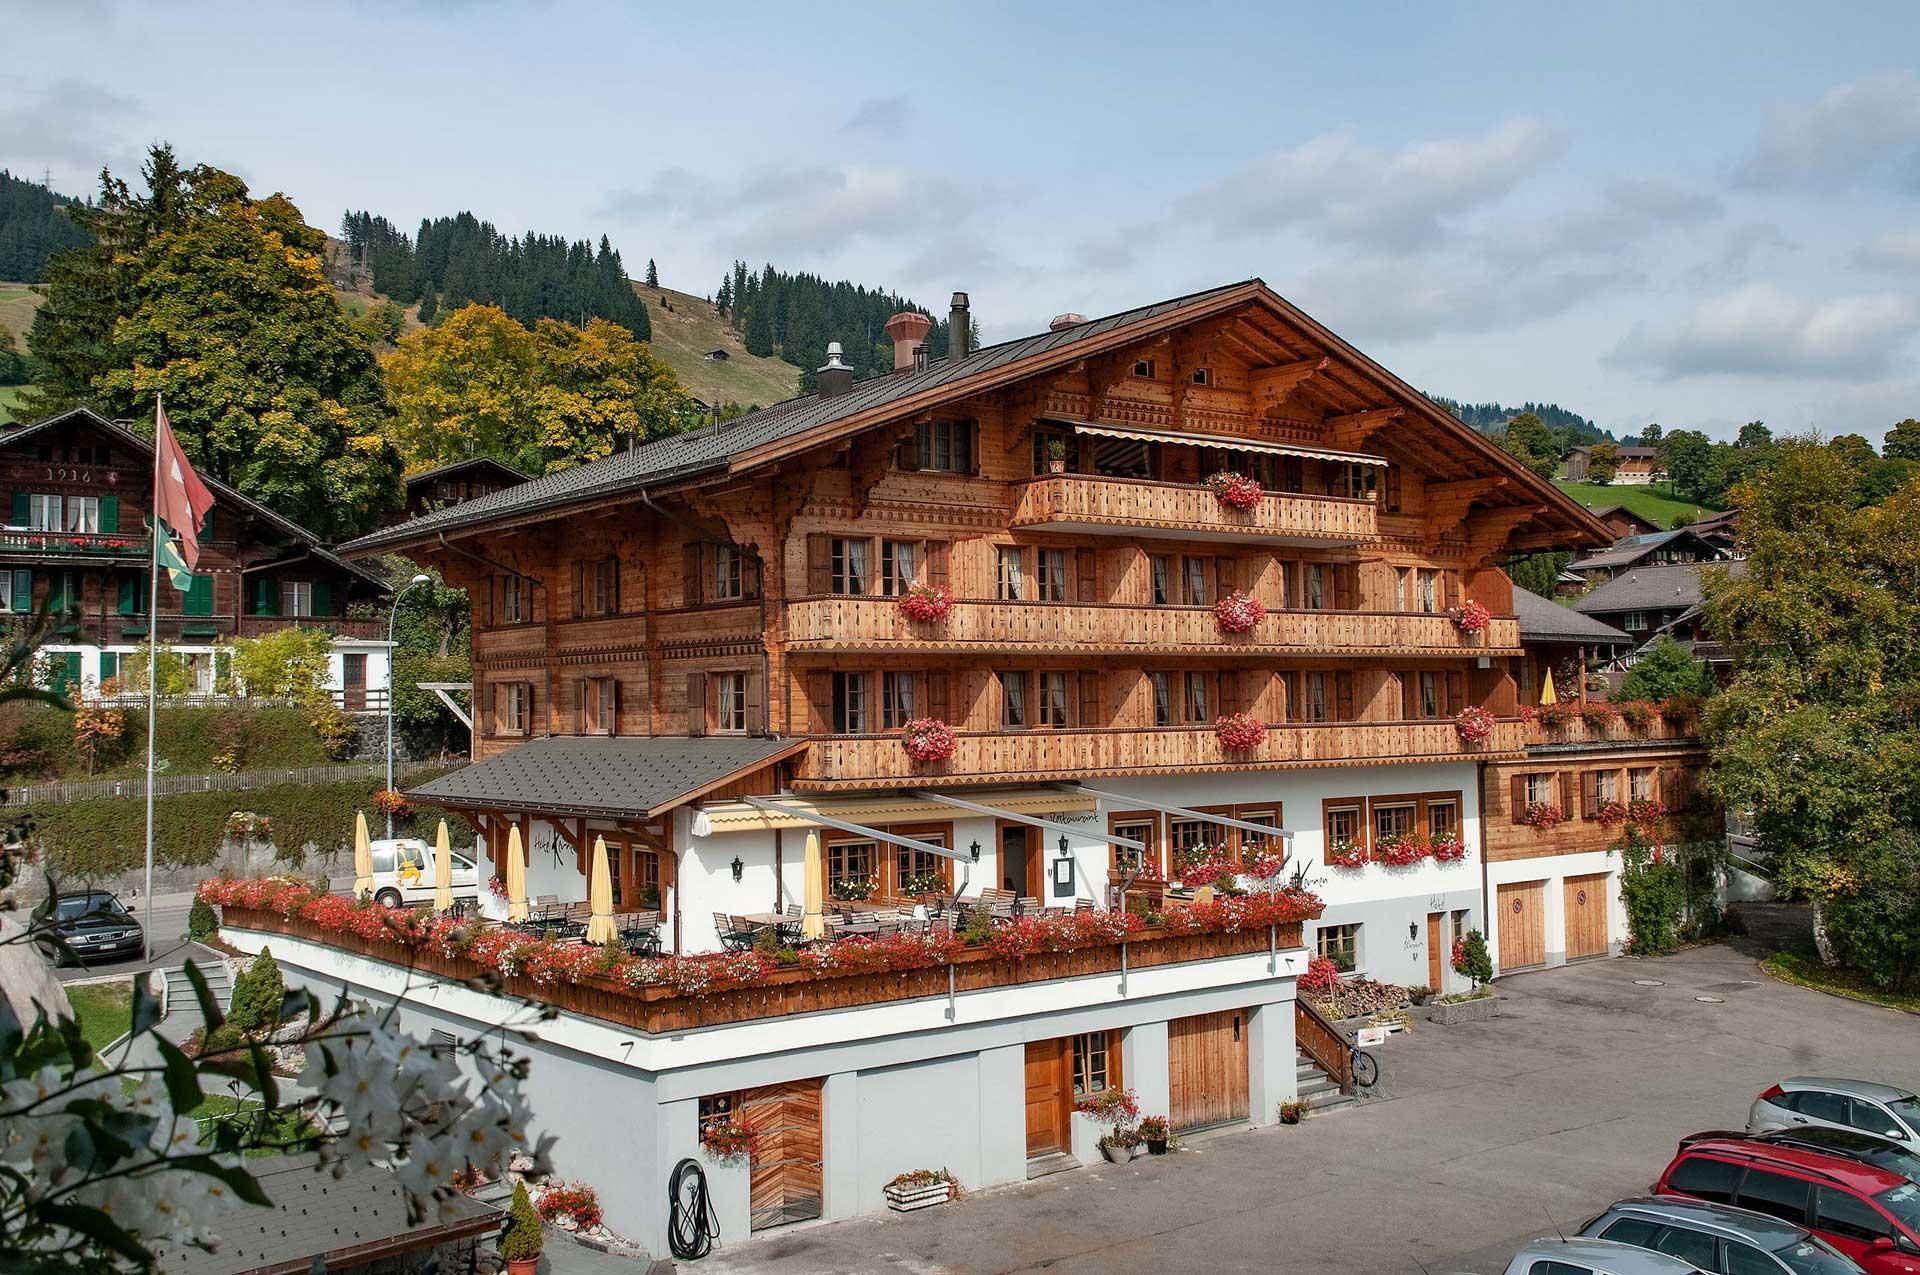 Hôtel Kernen
- Schönried / Gstaad -